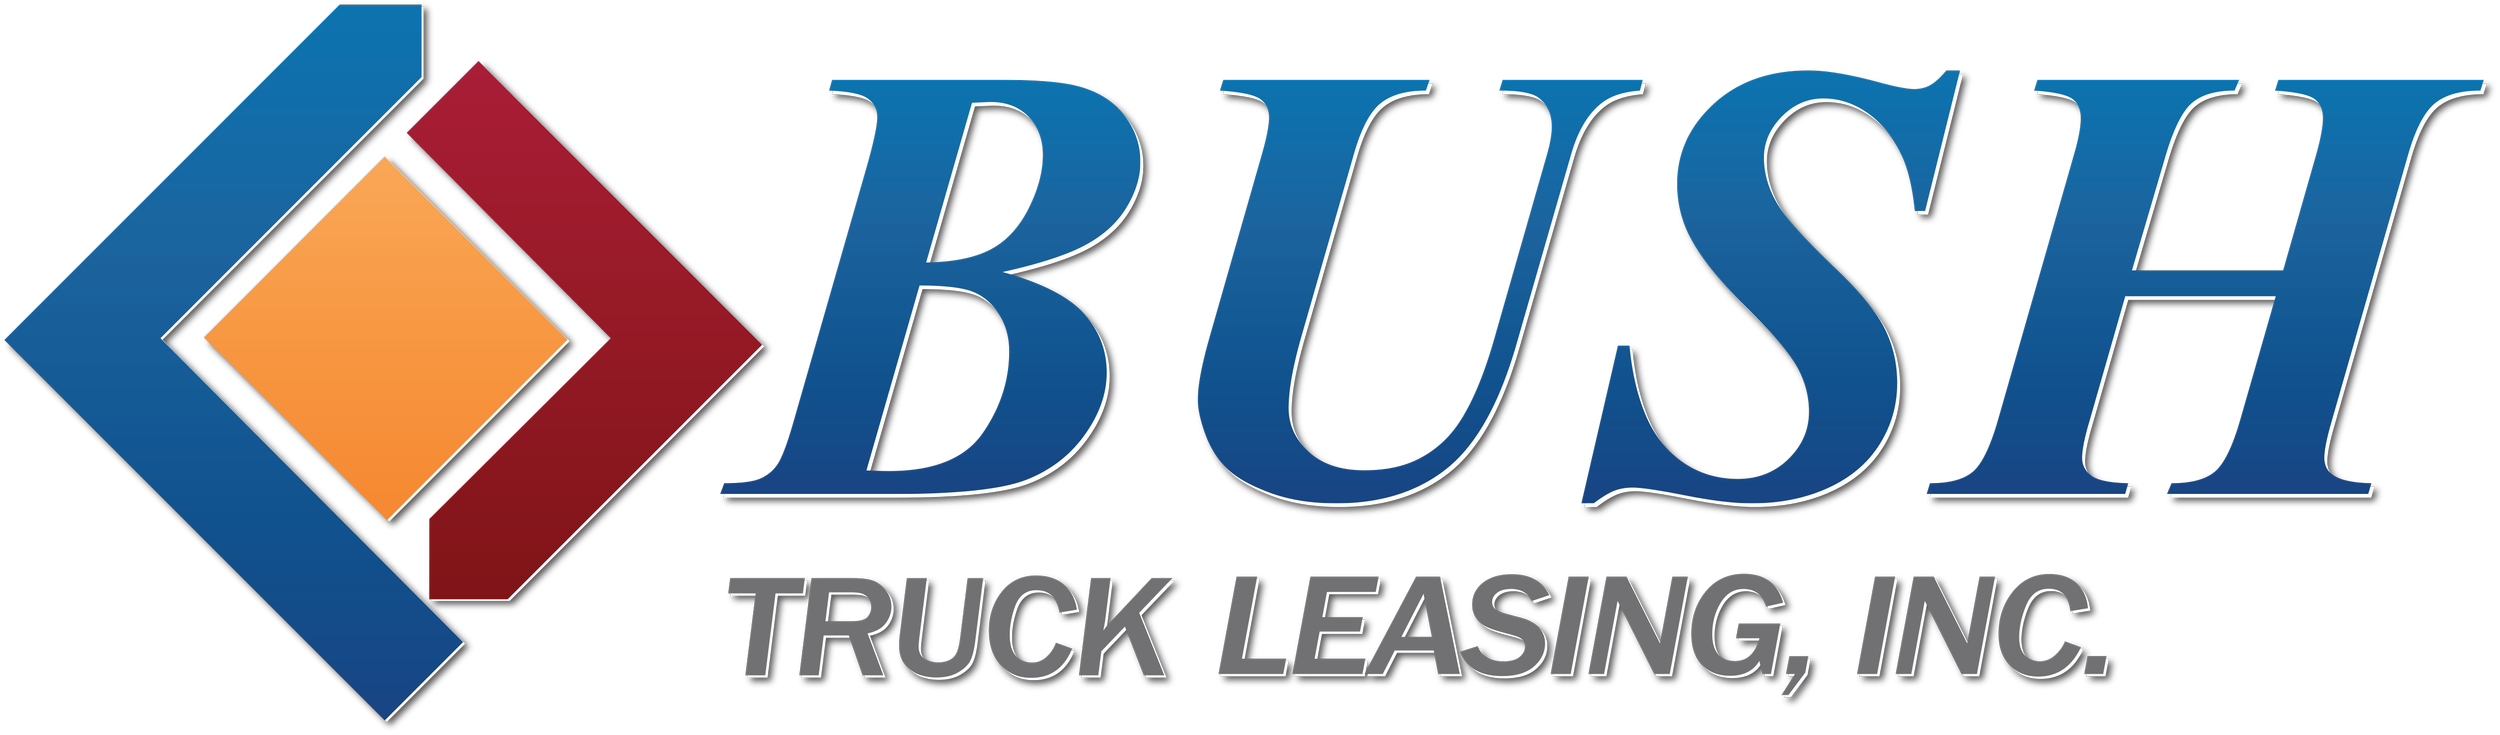 Bush Truck Leasing